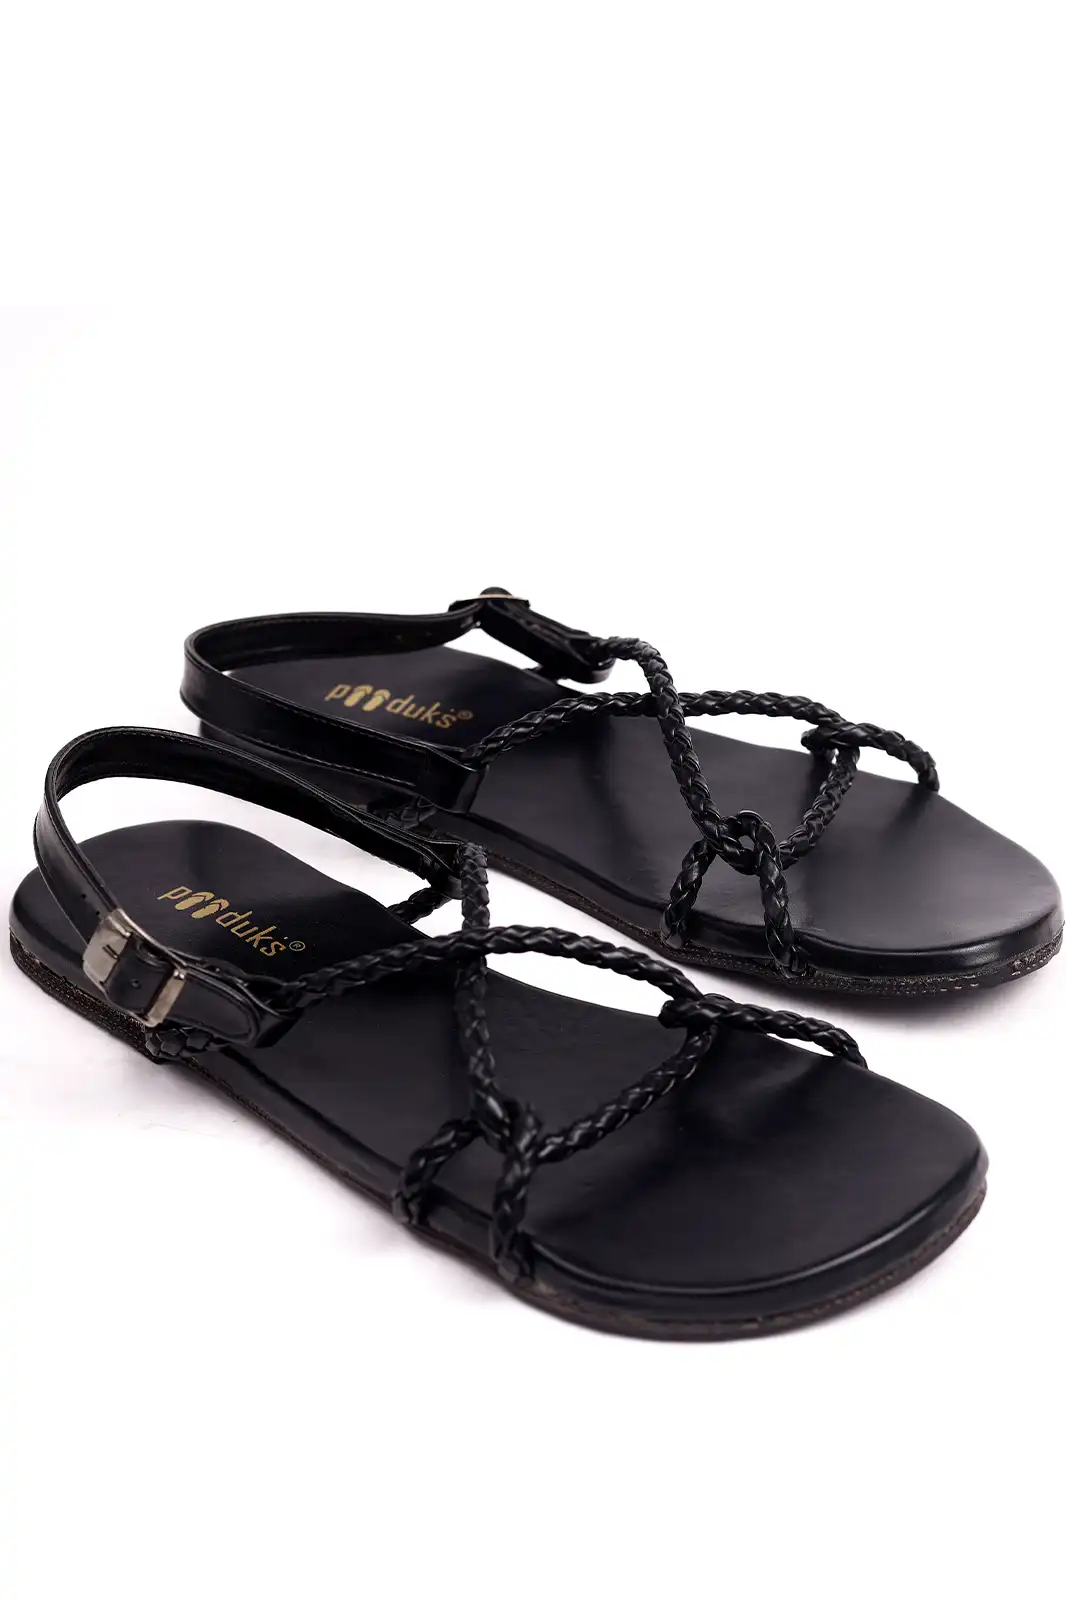 Buy Black Sandals for Men by Lee Cooper Online | Ajio.com-hkpdtq2012.edu.vn